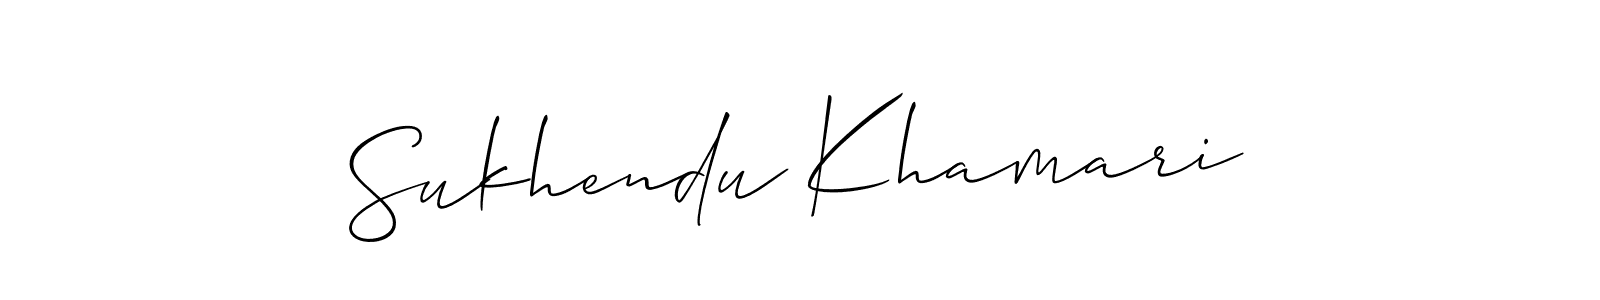 How to make Sukhendu Khamari signature? Allison_Script is a professional autograph style. Create handwritten signature for Sukhendu Khamari name. Sukhendu Khamari signature style 2 images and pictures png